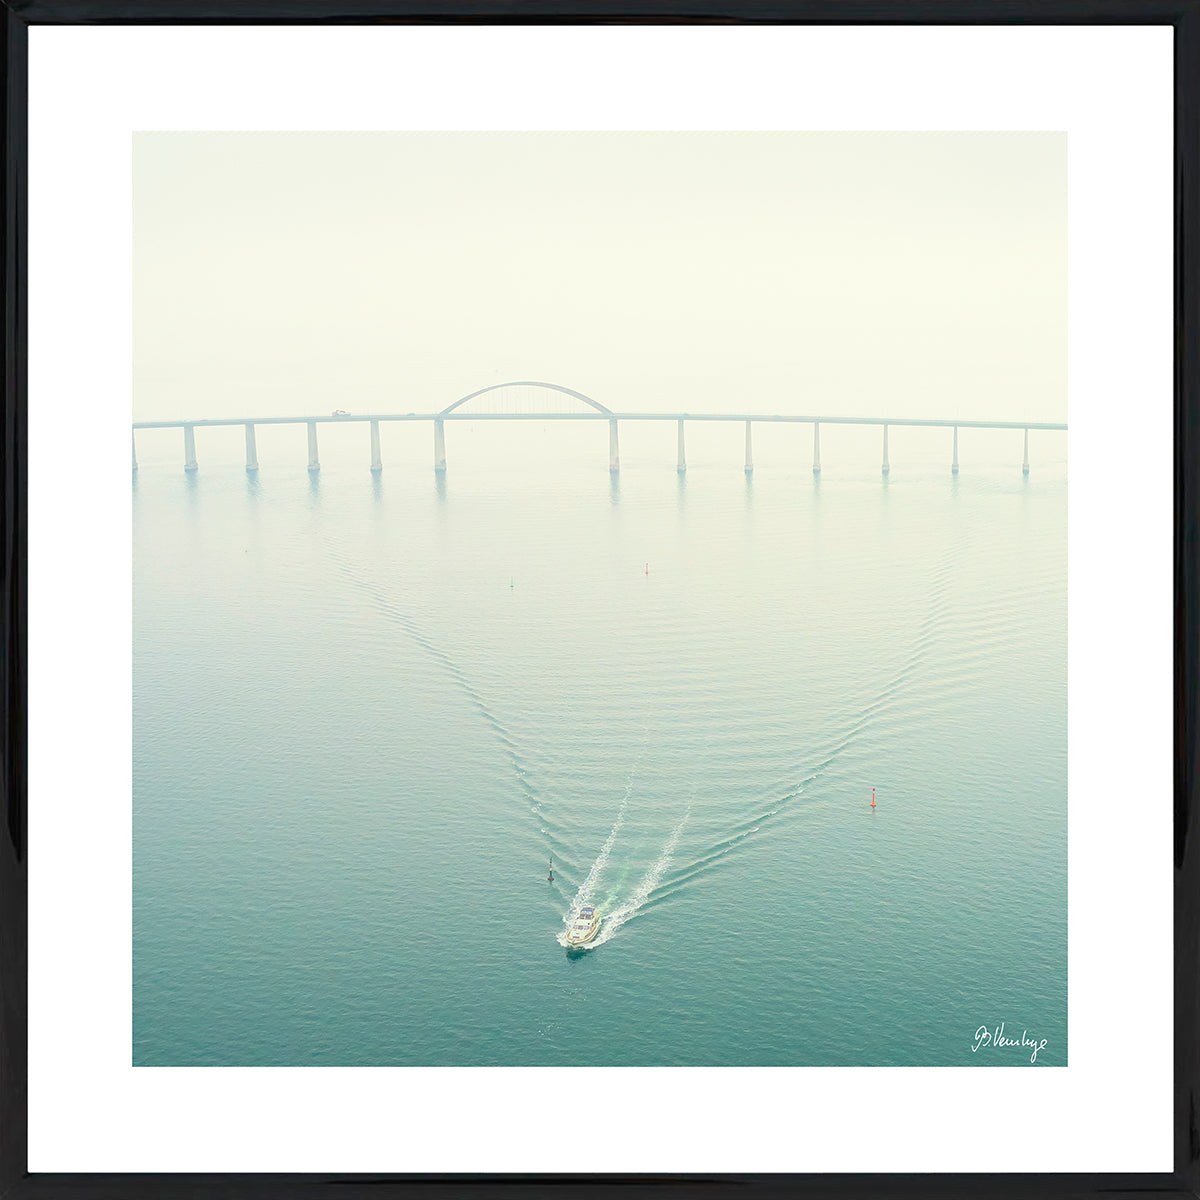 Langelandsbroen på en diset dag. En mindre båd trækker mønstre i vandet. Sart tyrkisgrøn med en rød bøje.